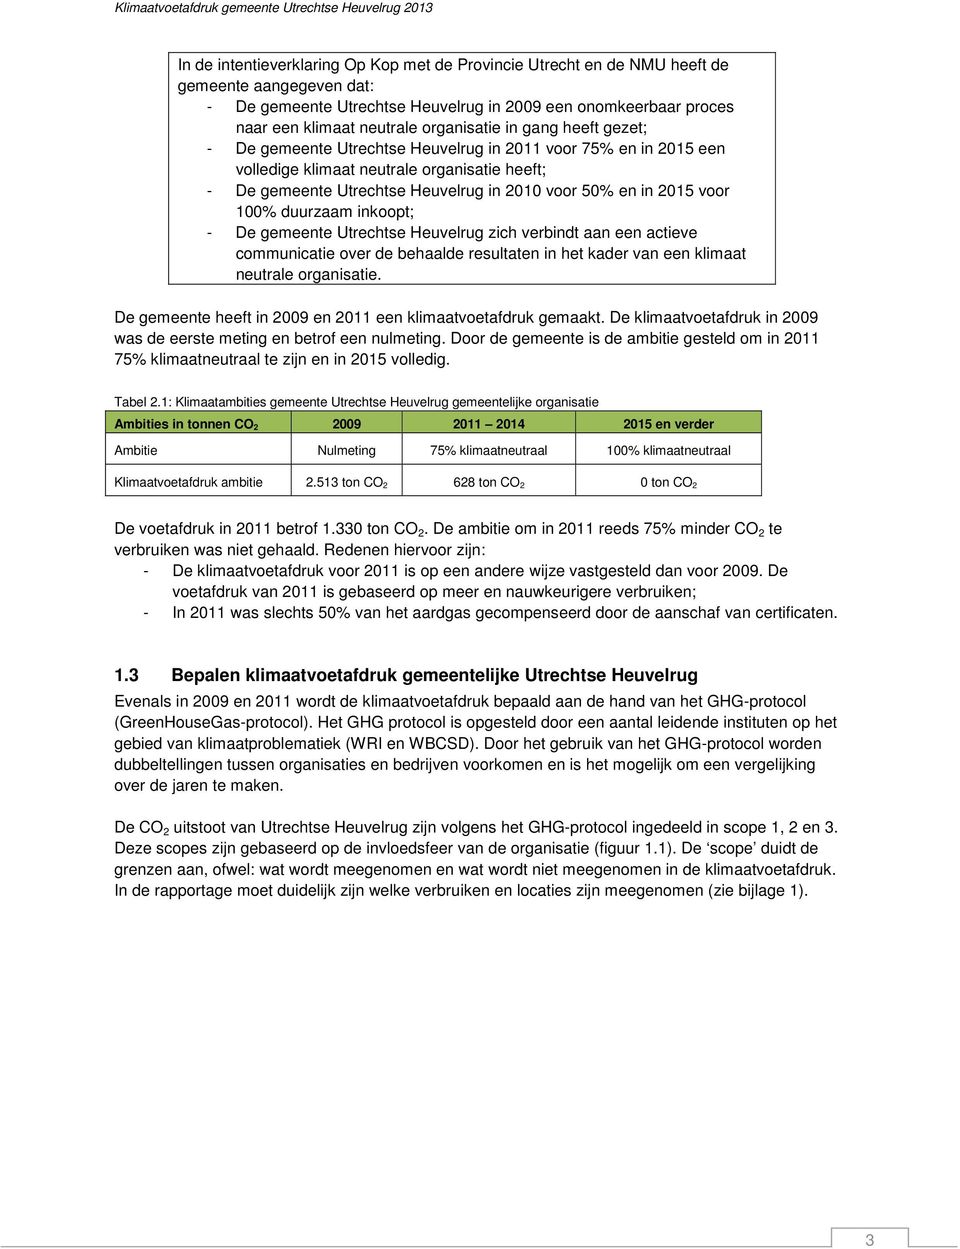 in 2015 voor 100% duurzaam inkoopt; - De gemeente Utrechtse Heuvelrug zich verbindt aan een actieve communicatie over de behaalde resultaten in het kader van een klimaat neutrale organisatie.